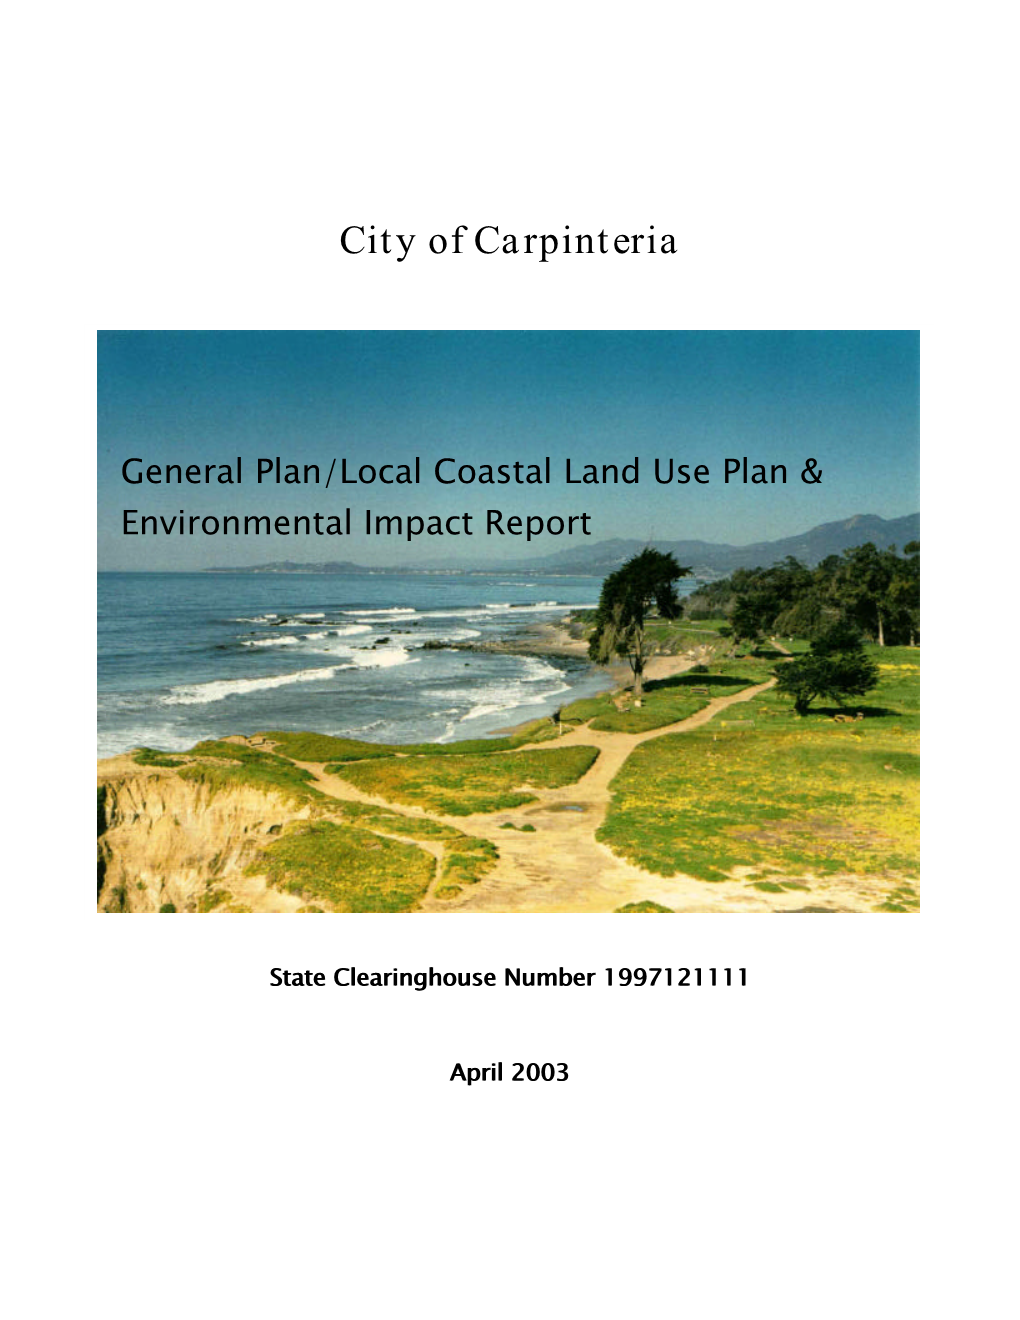 General Plan/Local Coastal Land Use Plan & Environmental Impact Report